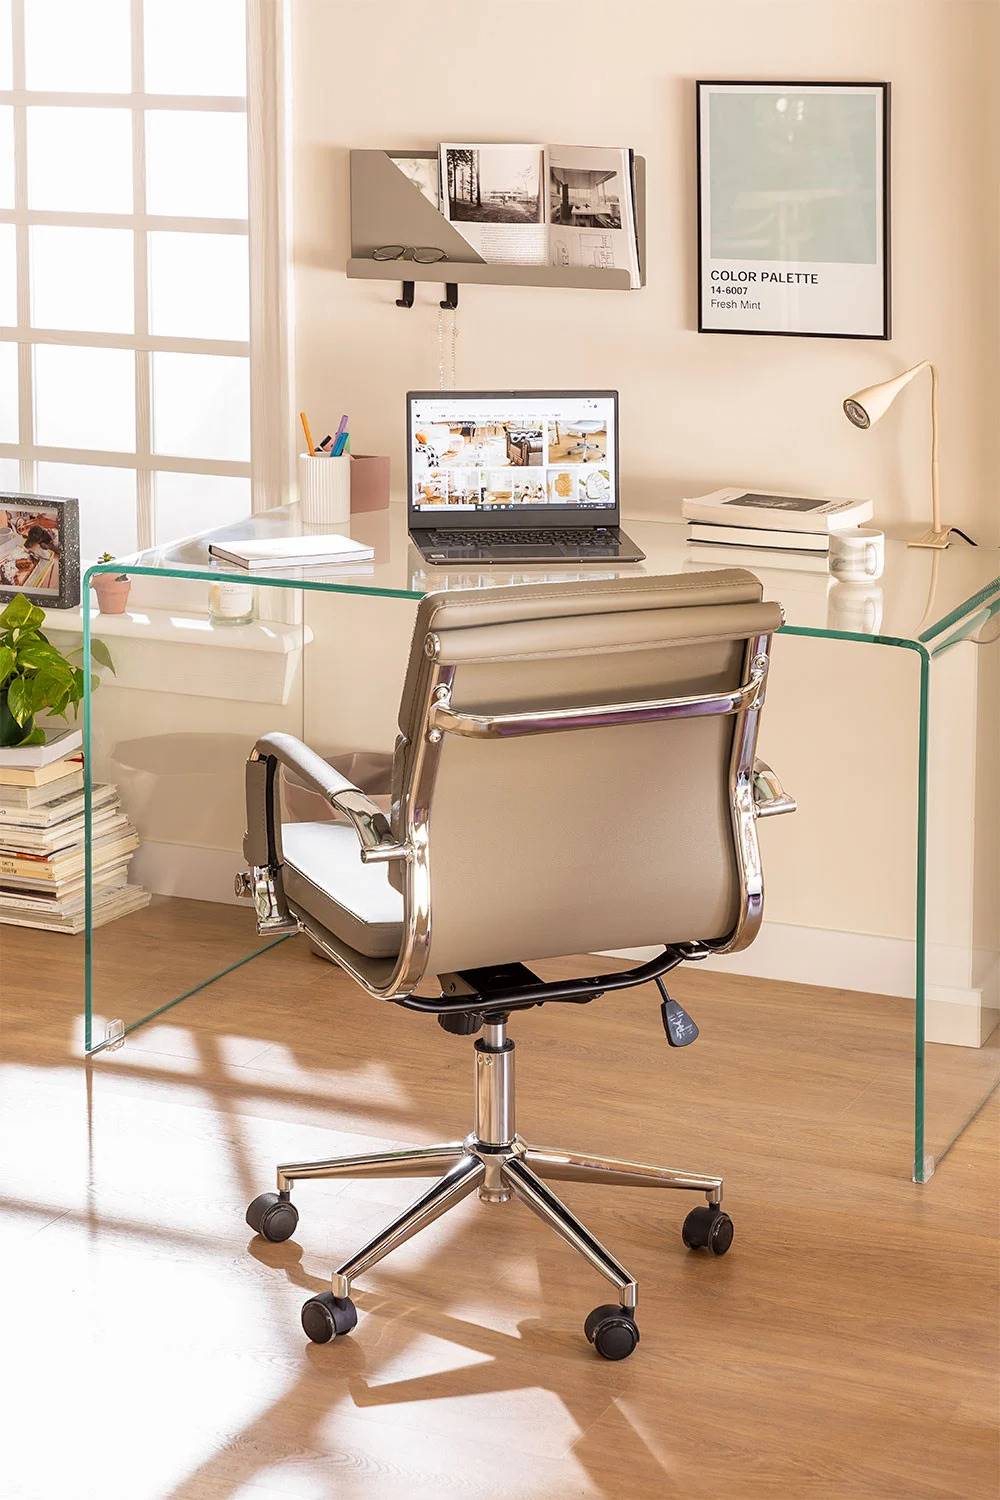 Muebles de salón modernos: un escritorio de cristal transparente. 